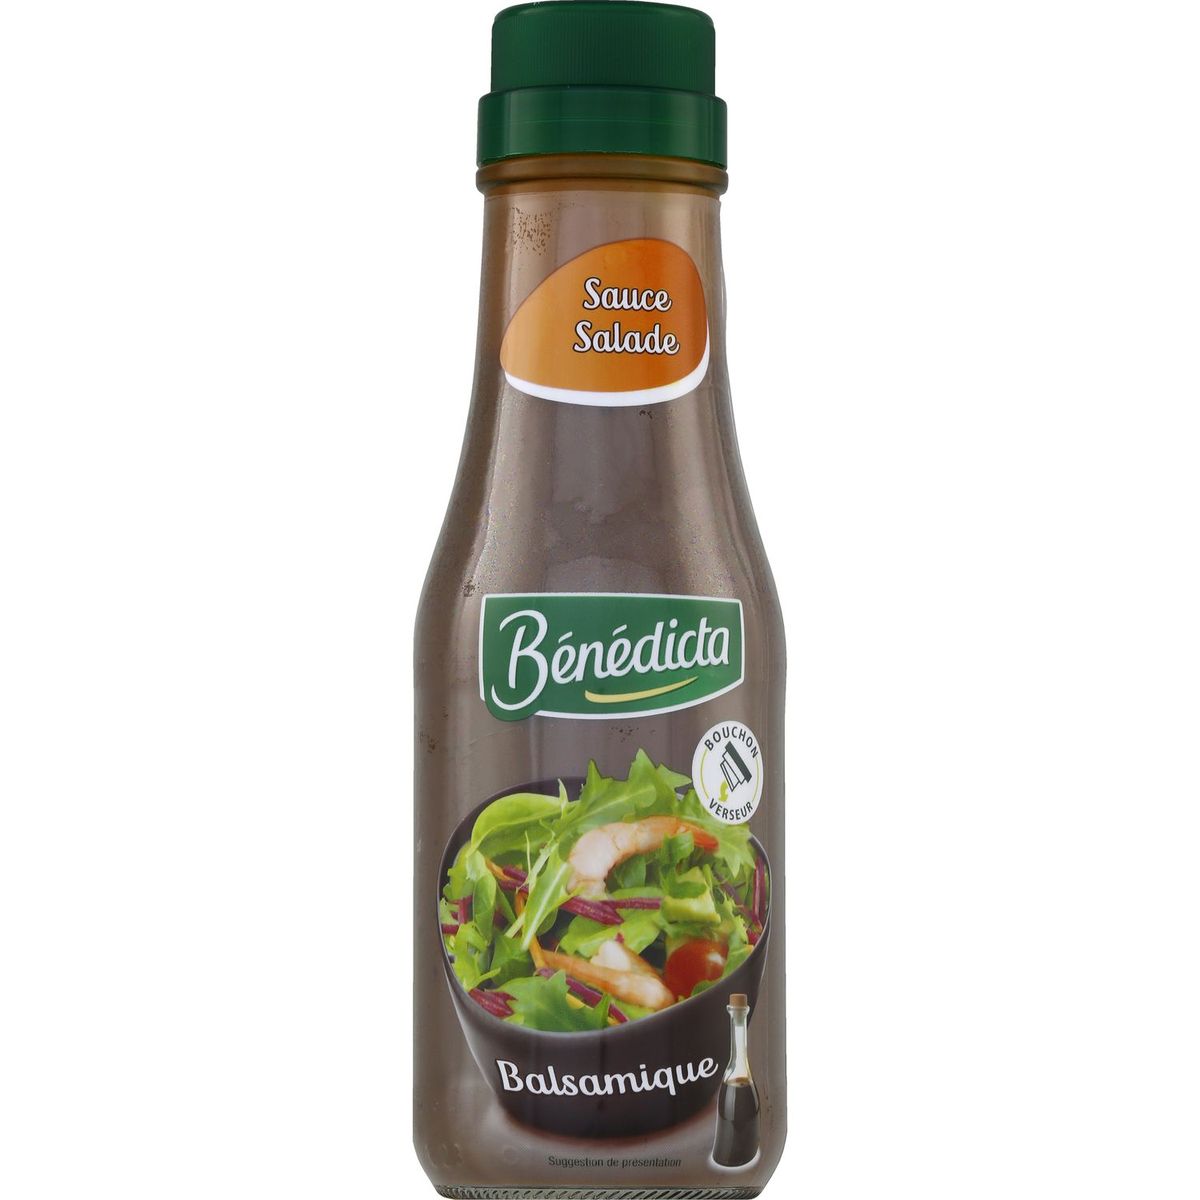 BENEDICTA Bénédicta Sauce salade balsamique 300g 300g pas cher 